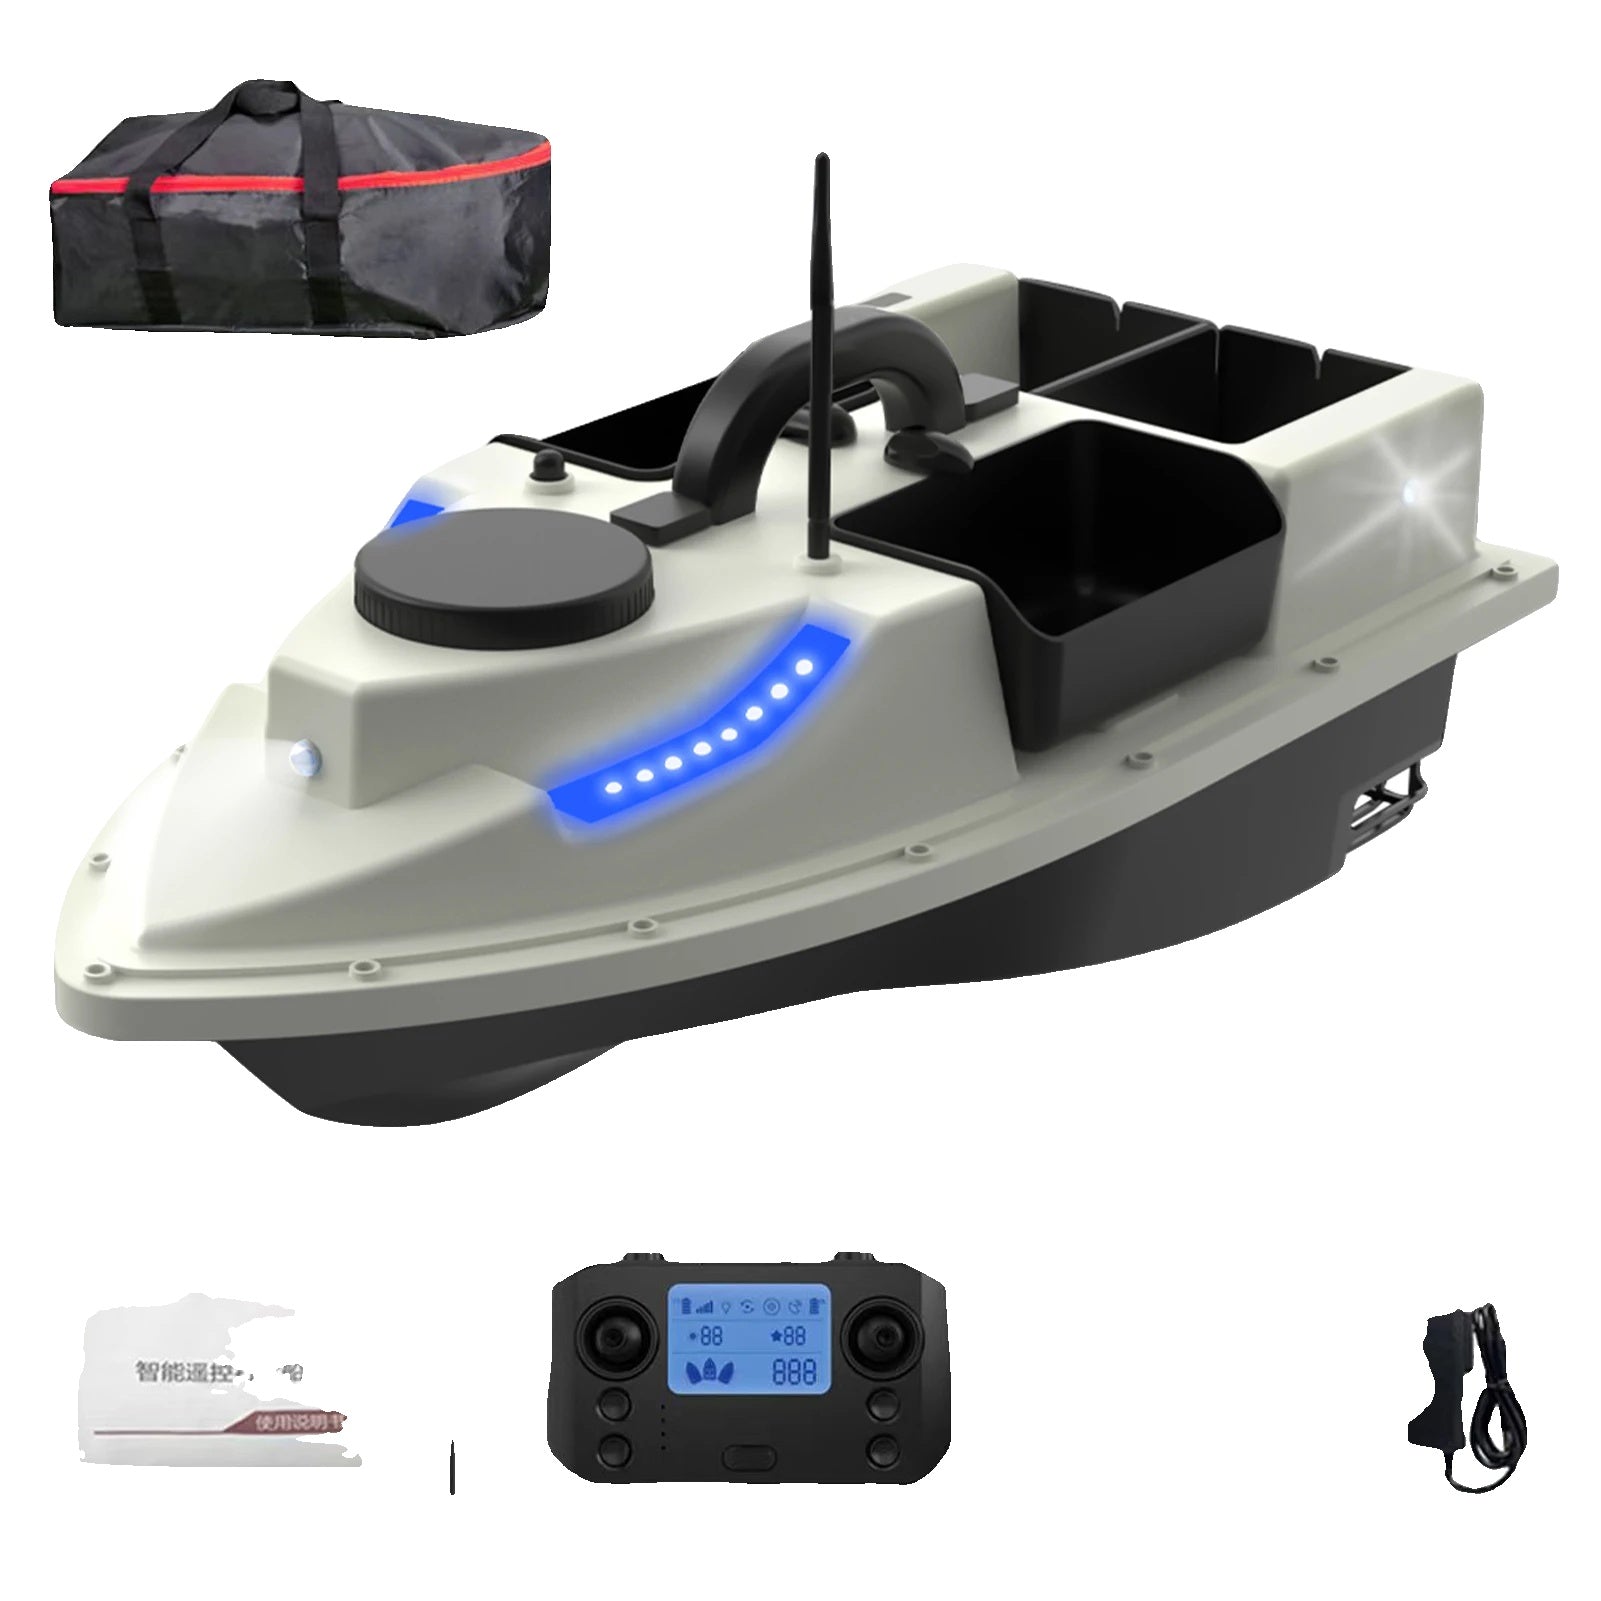 GPS-styrd betesbåt med fjärrkontroll, trådlös fjärrkontroll, 4 betesbehållare